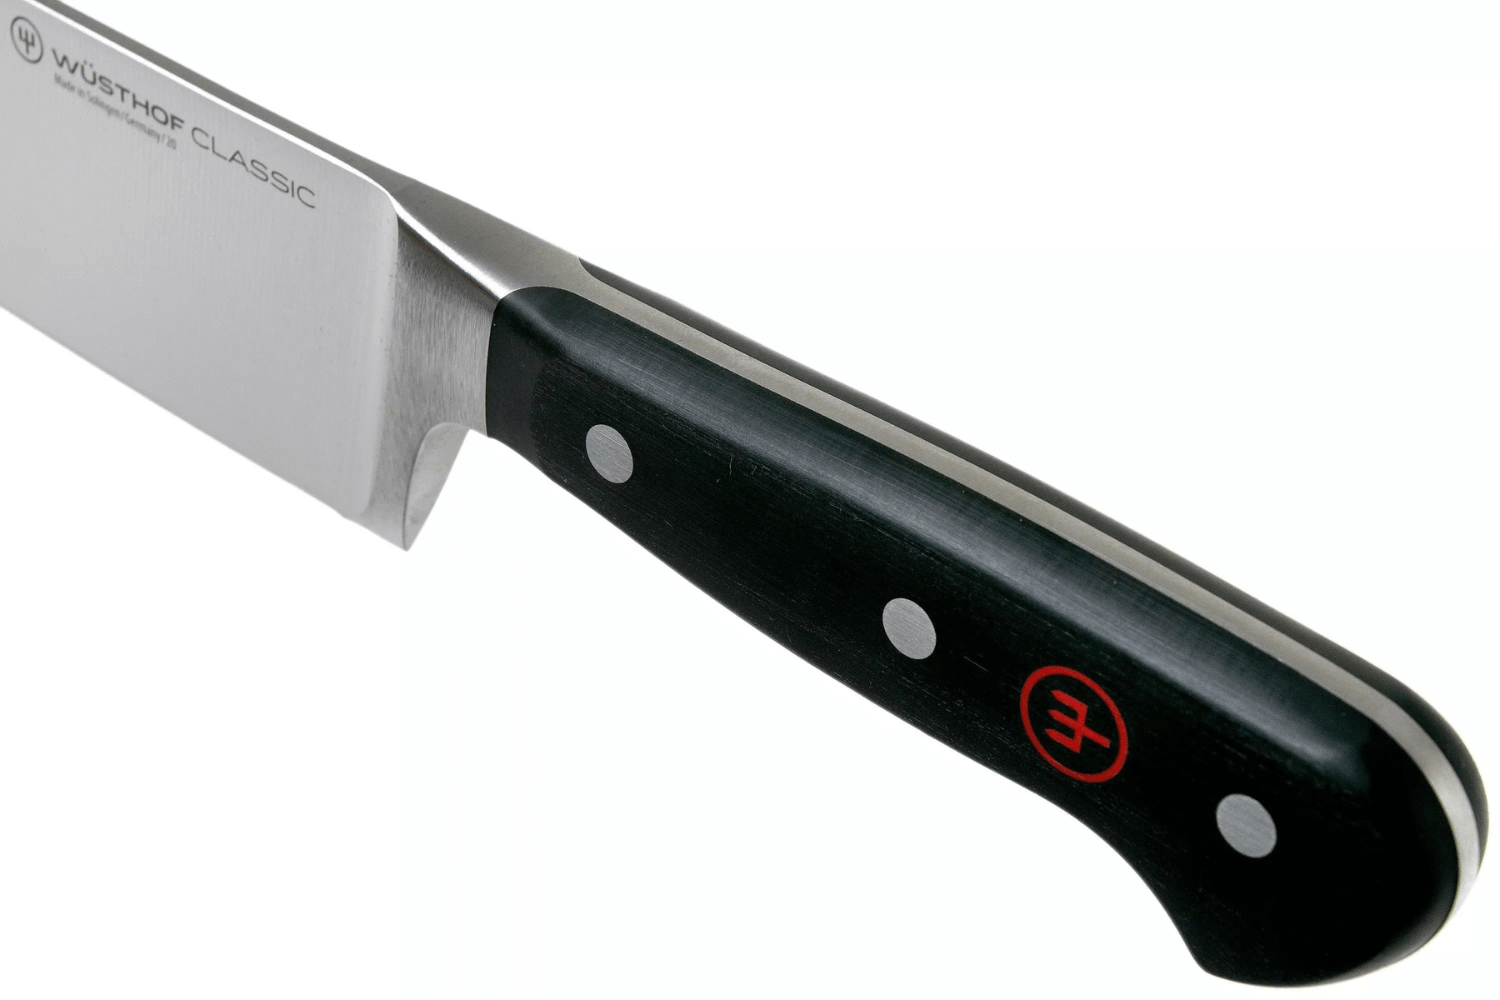 Wusthof Classic Ikon couteau à saucisson professionnel